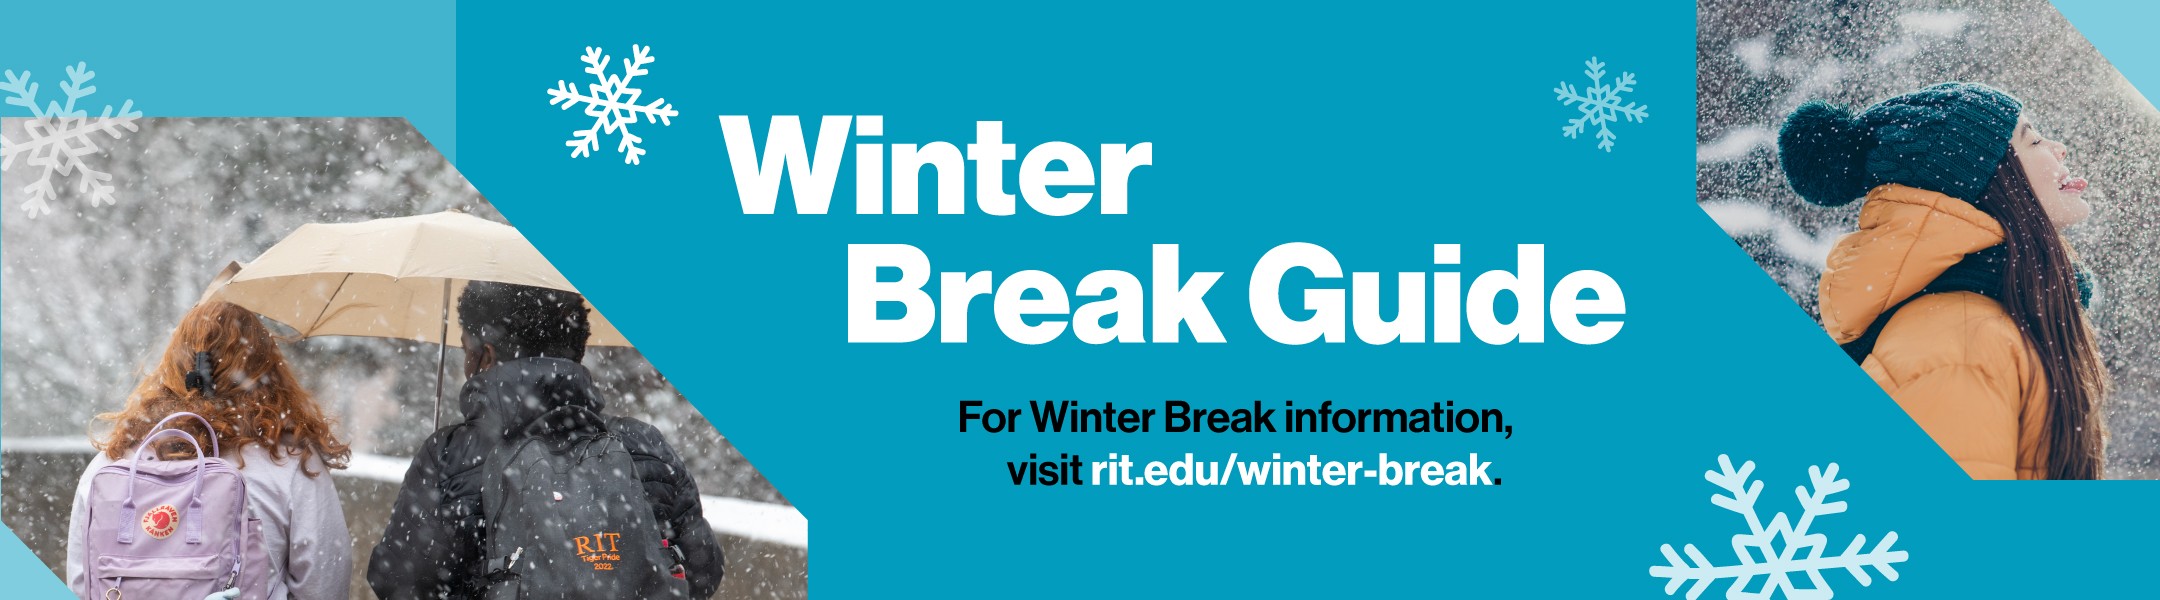 Winter Break Guide For winter break information, visit rit.edu/winter-break.